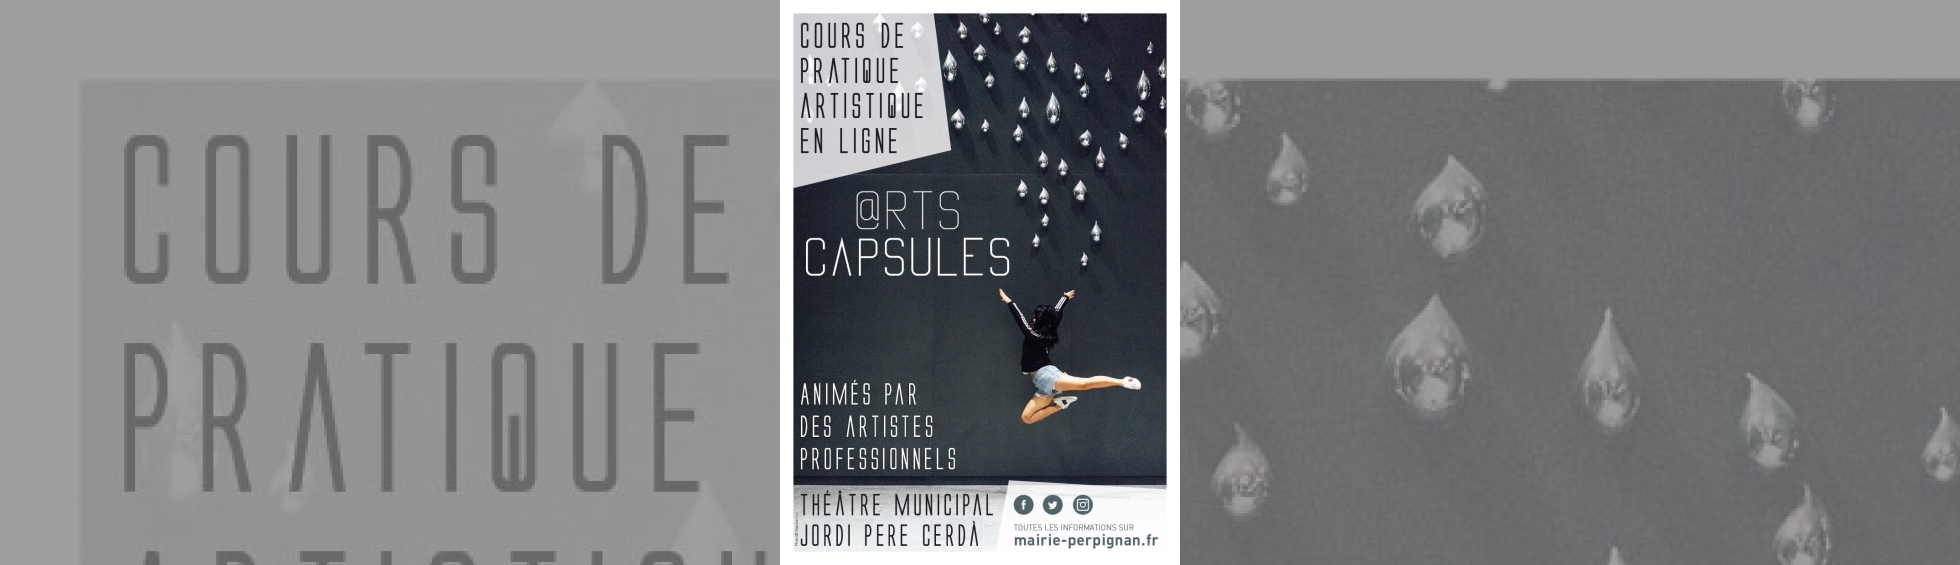 affiche @rts capsules - photo couleur danseuse en mouvement